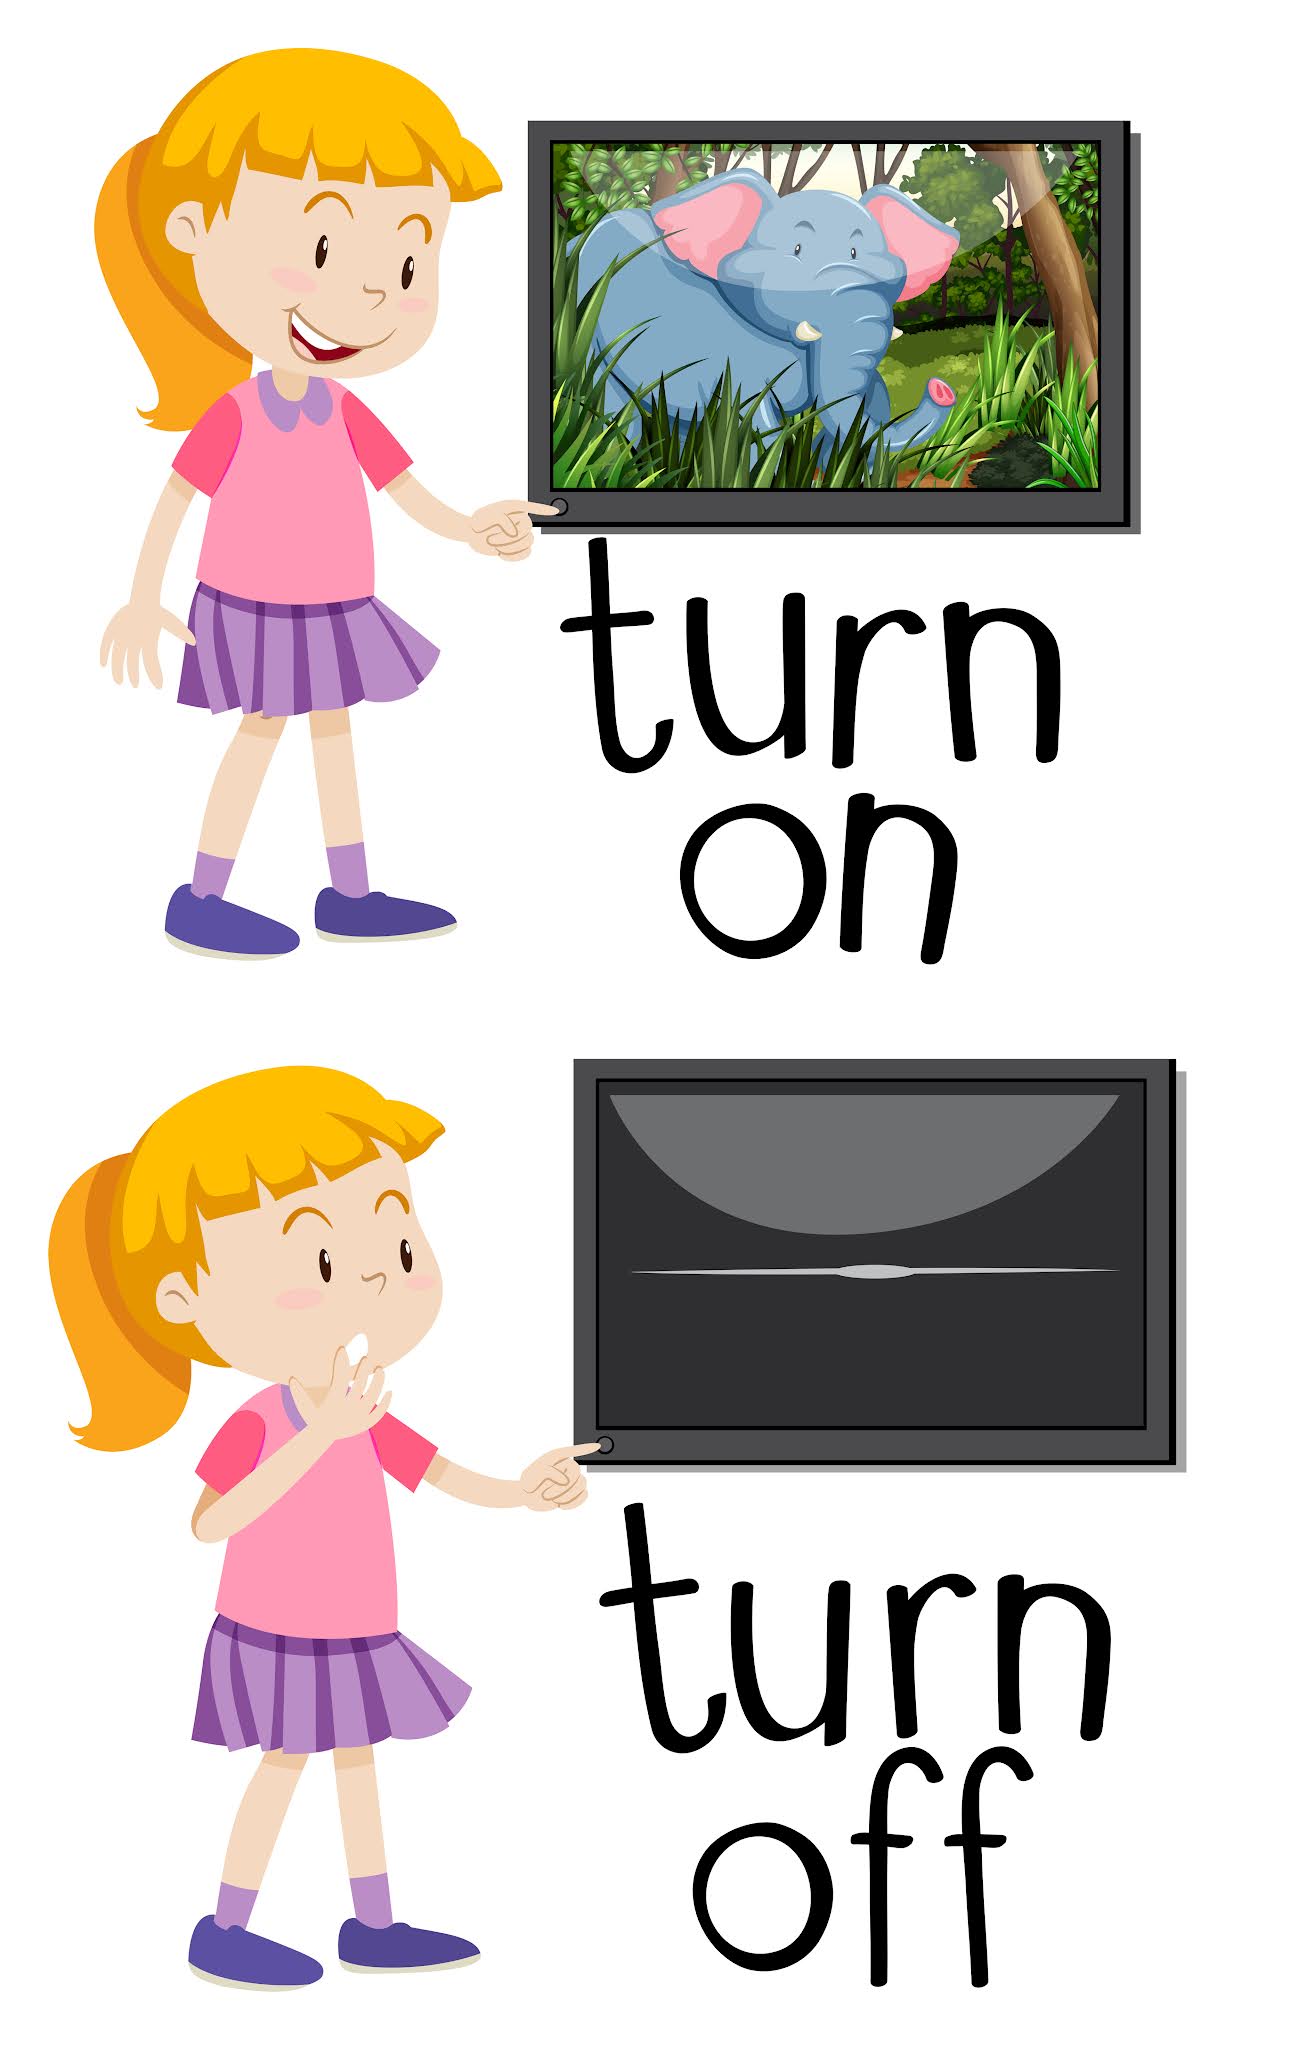 Turn on off. Turn on turn off. Turn off картинка. Turn картинка для детей.